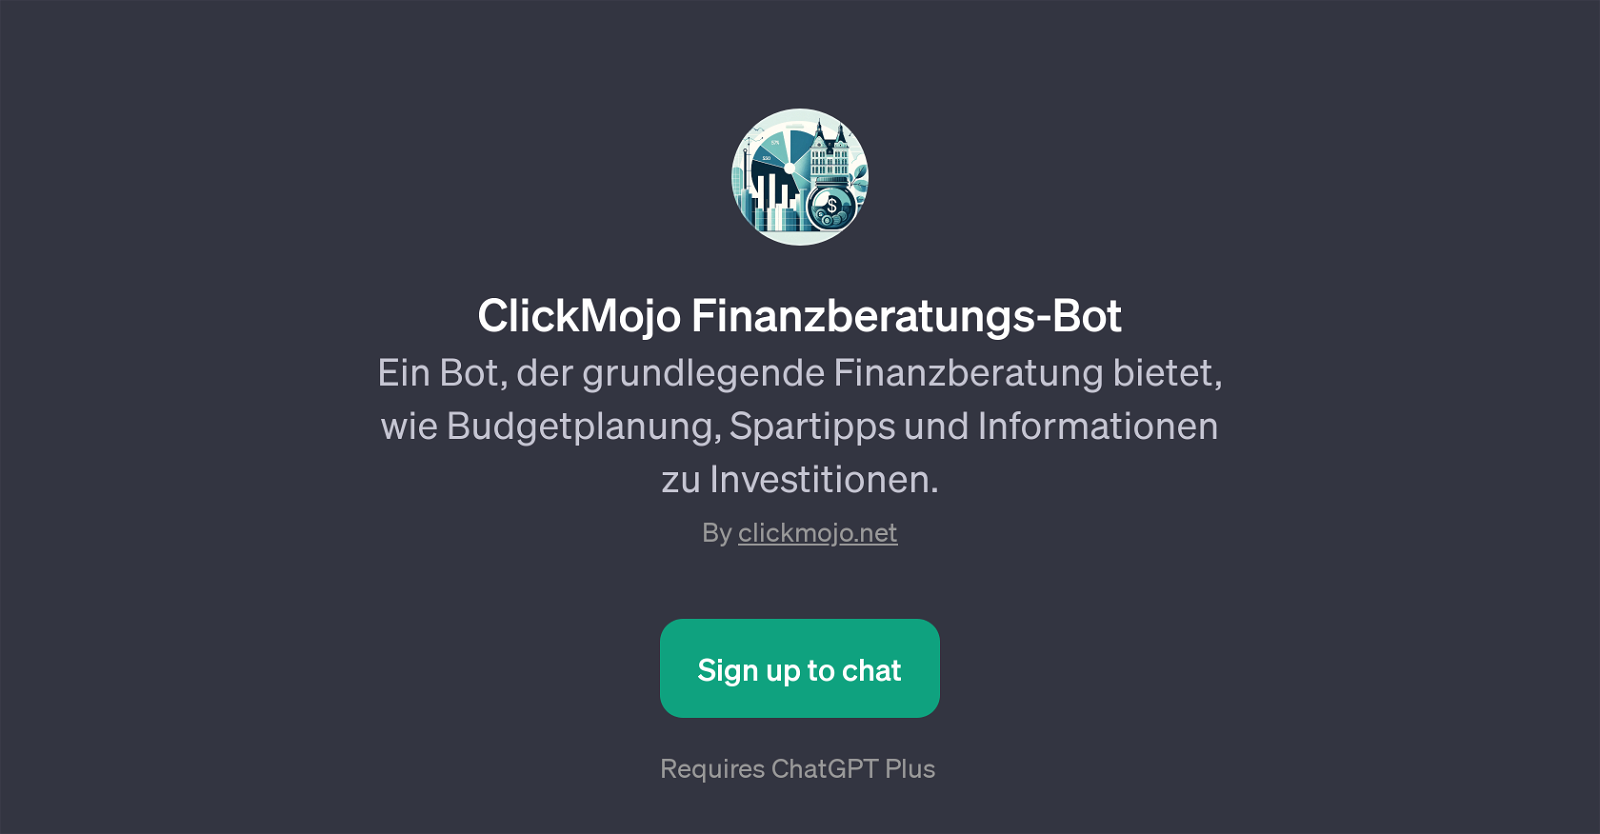 Finanzberatungs-Bot website